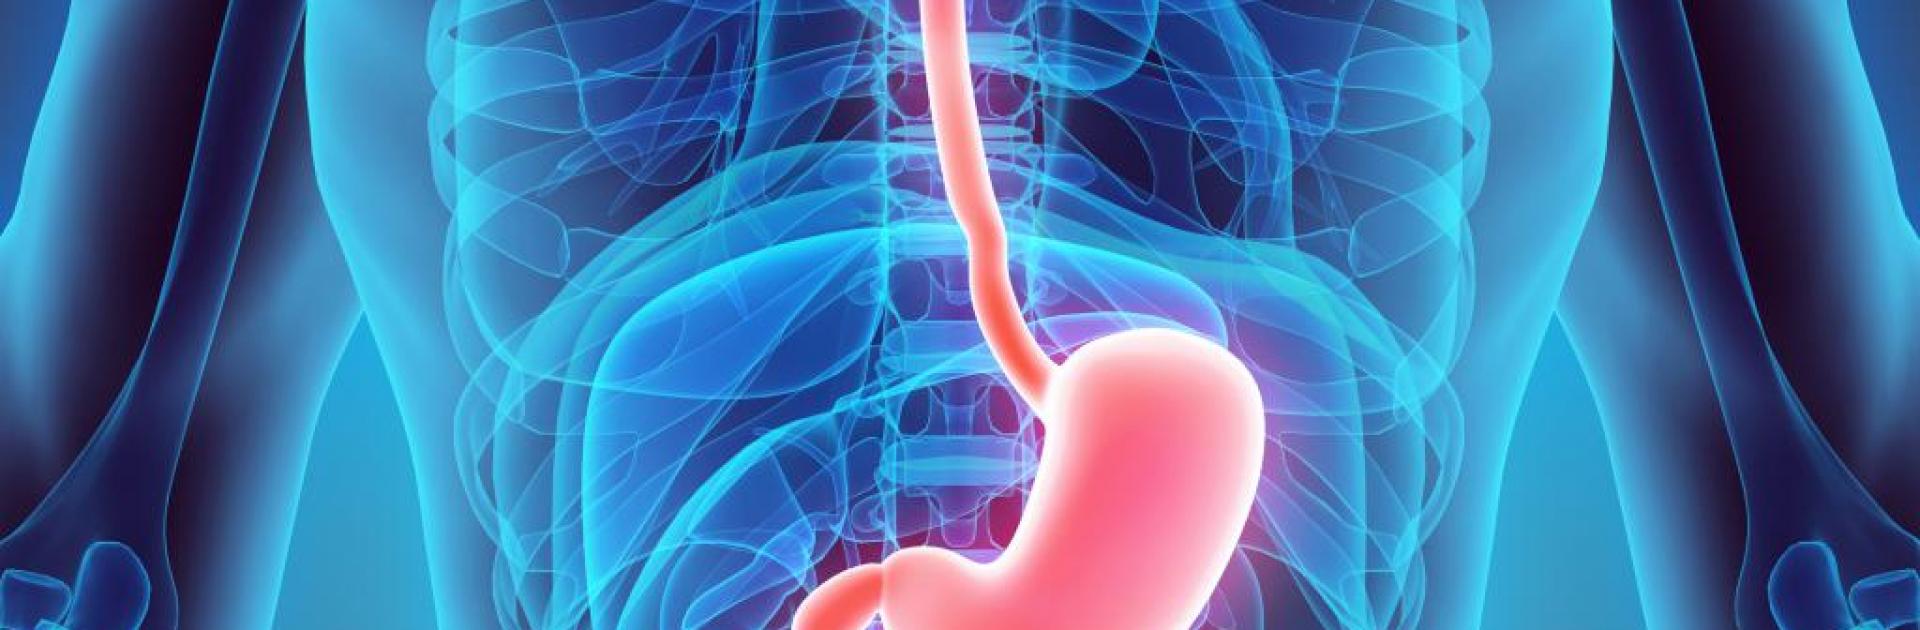 Gastroenterologie Asklepion Karlovy Vary: prevence, léčba i hubnutí bez dlouhého čekání